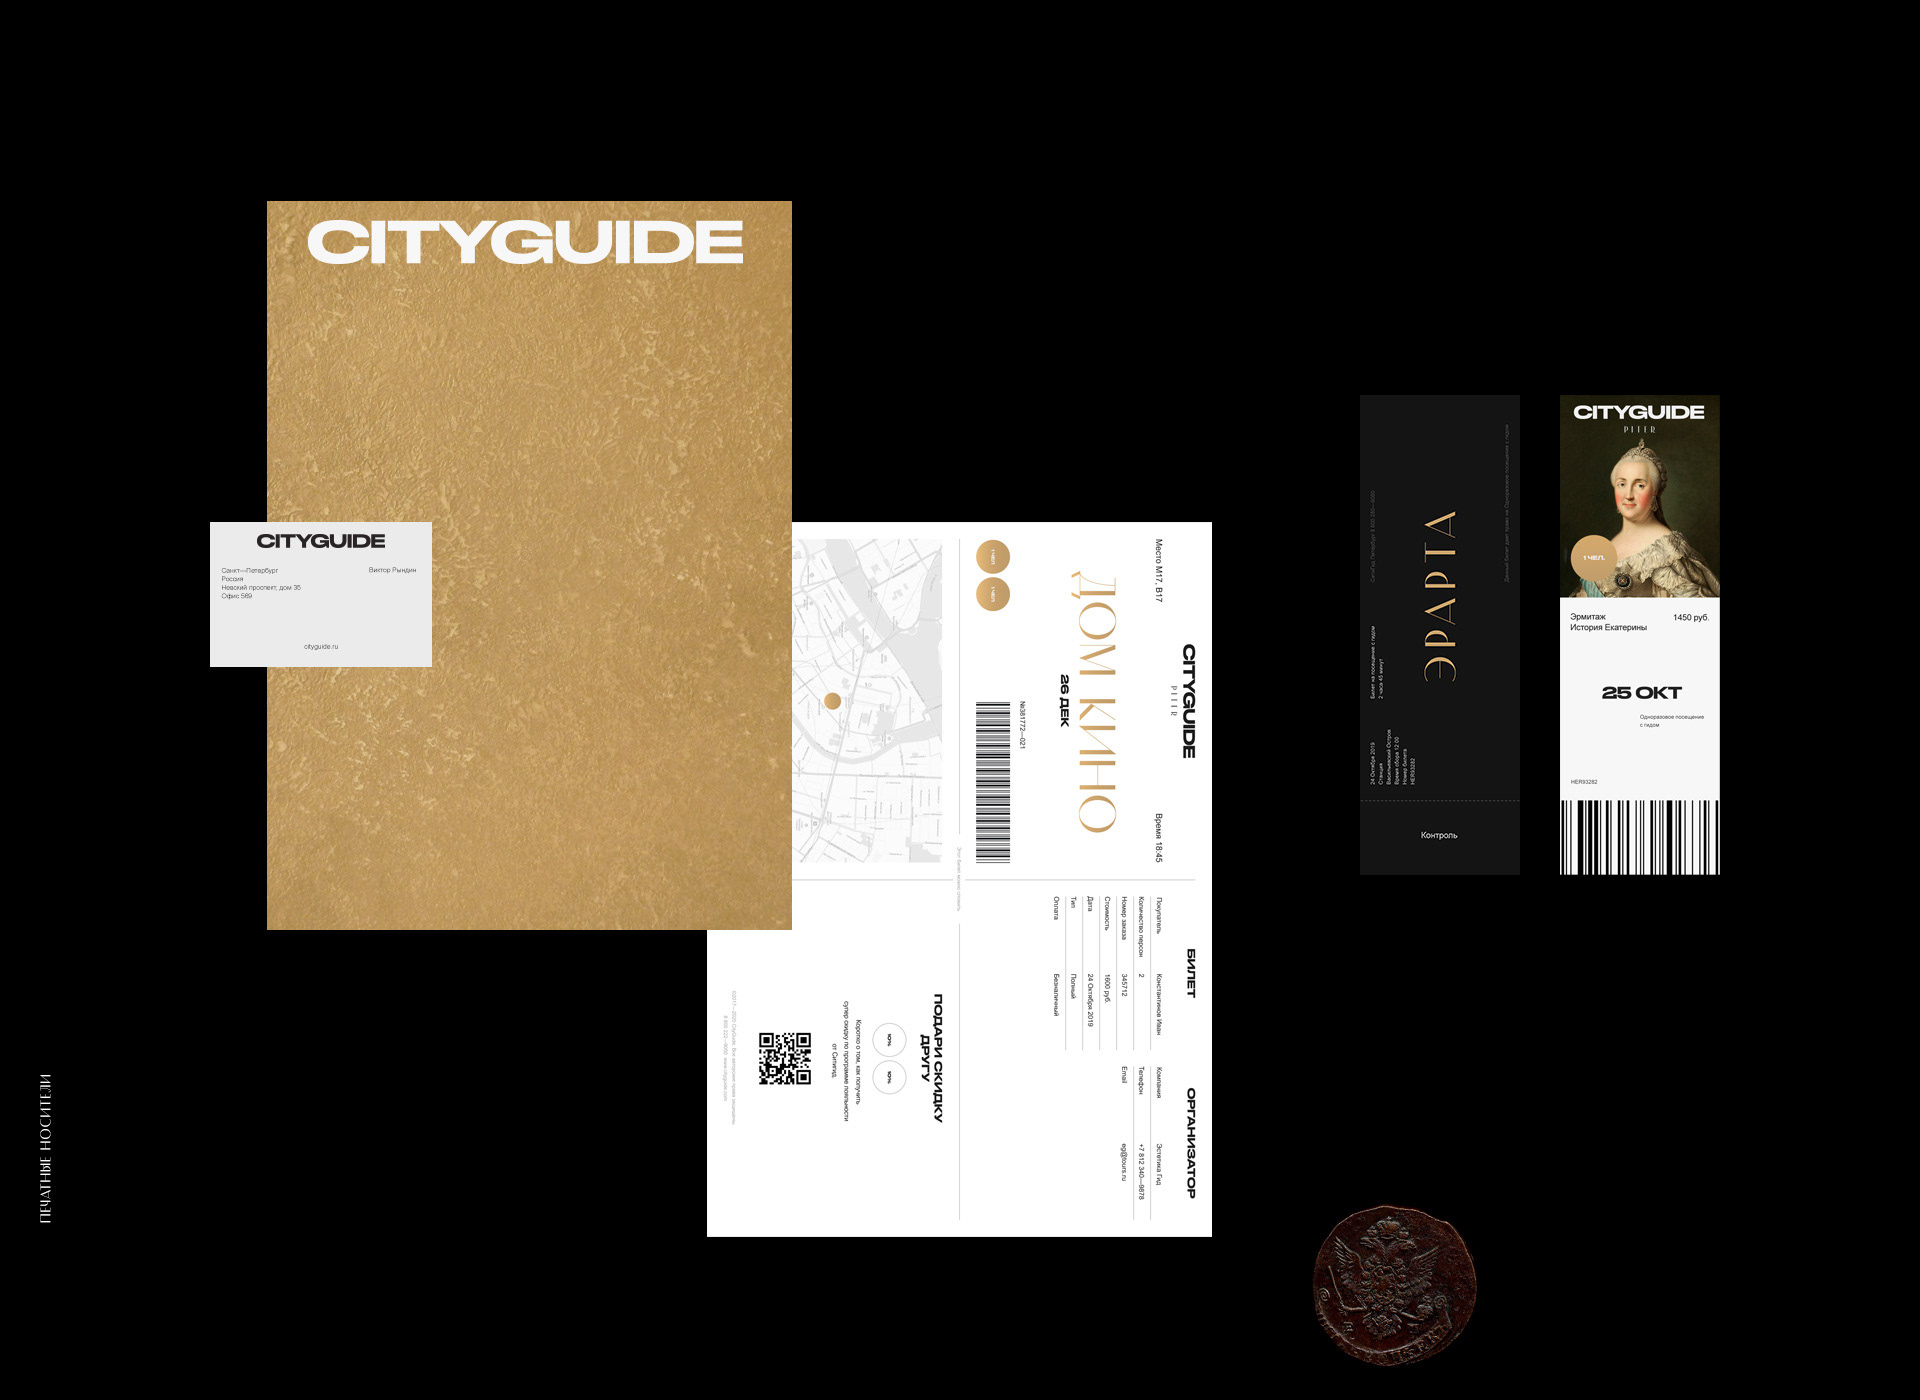 CityGuide — Изображение №27 — Интерфейсы, Анимация на Dprofile